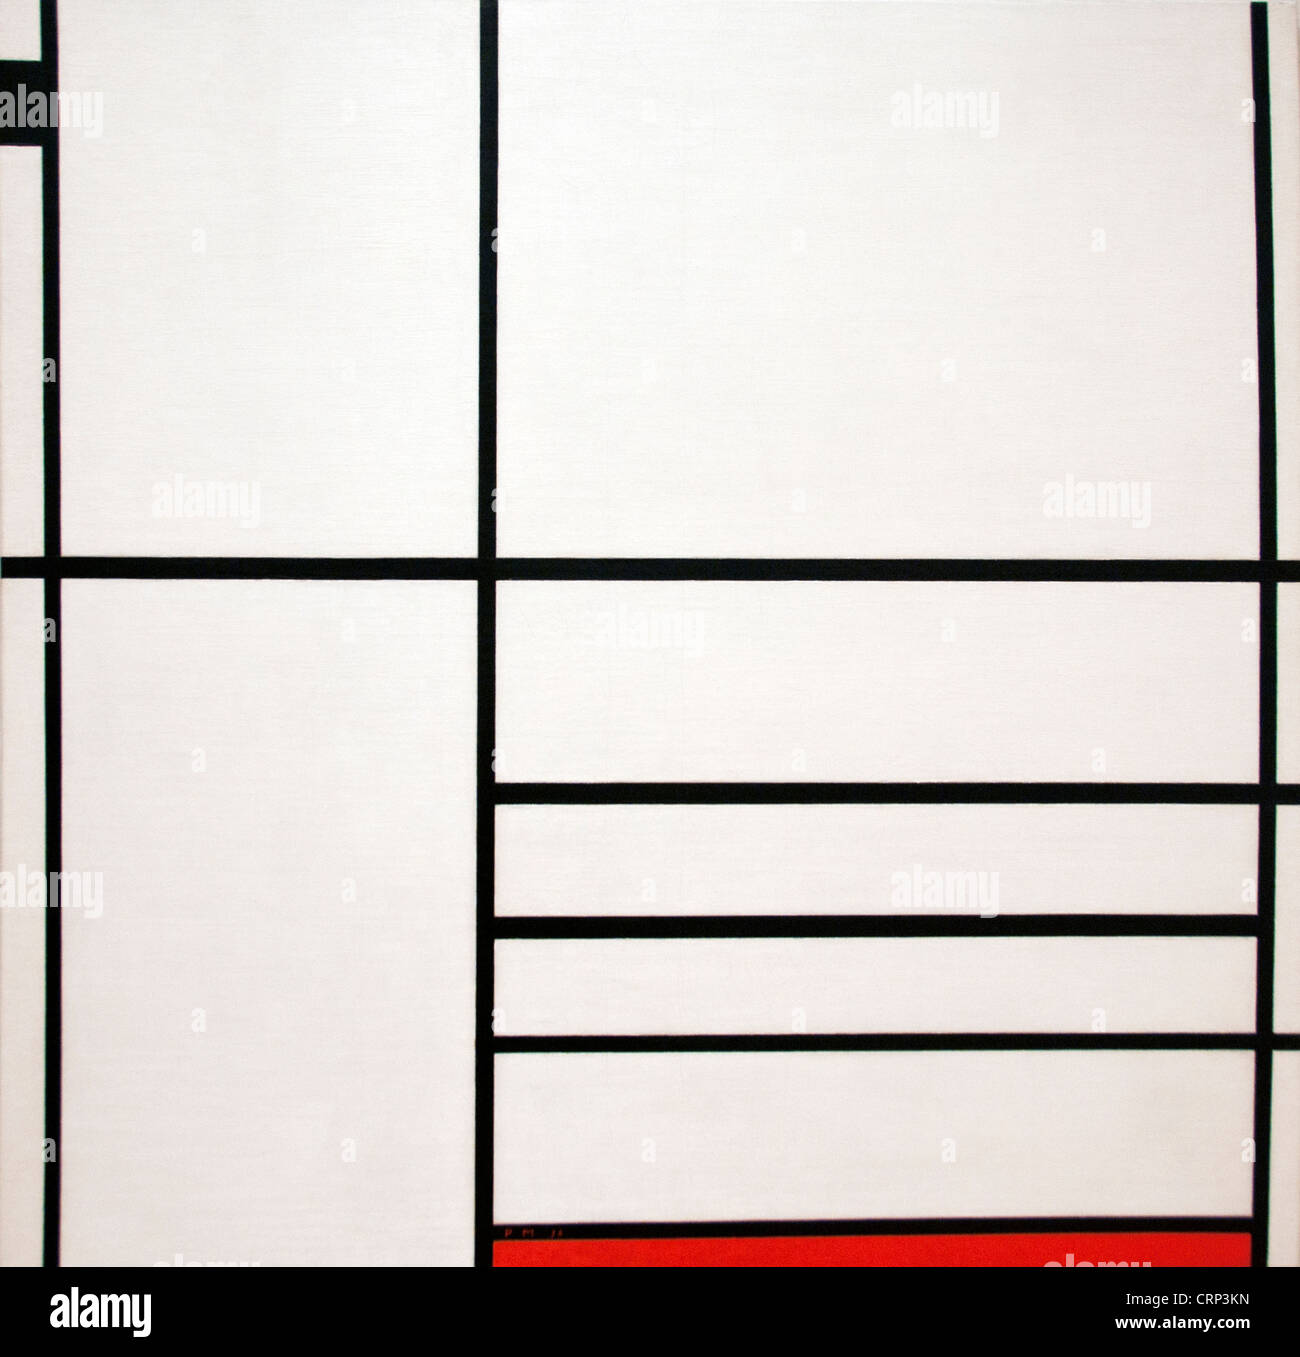 Composition en Blanc Noir et rouge 1936 Piet Mondrian - Pays-Bas néerlandais Mondriaan Banque D'Images